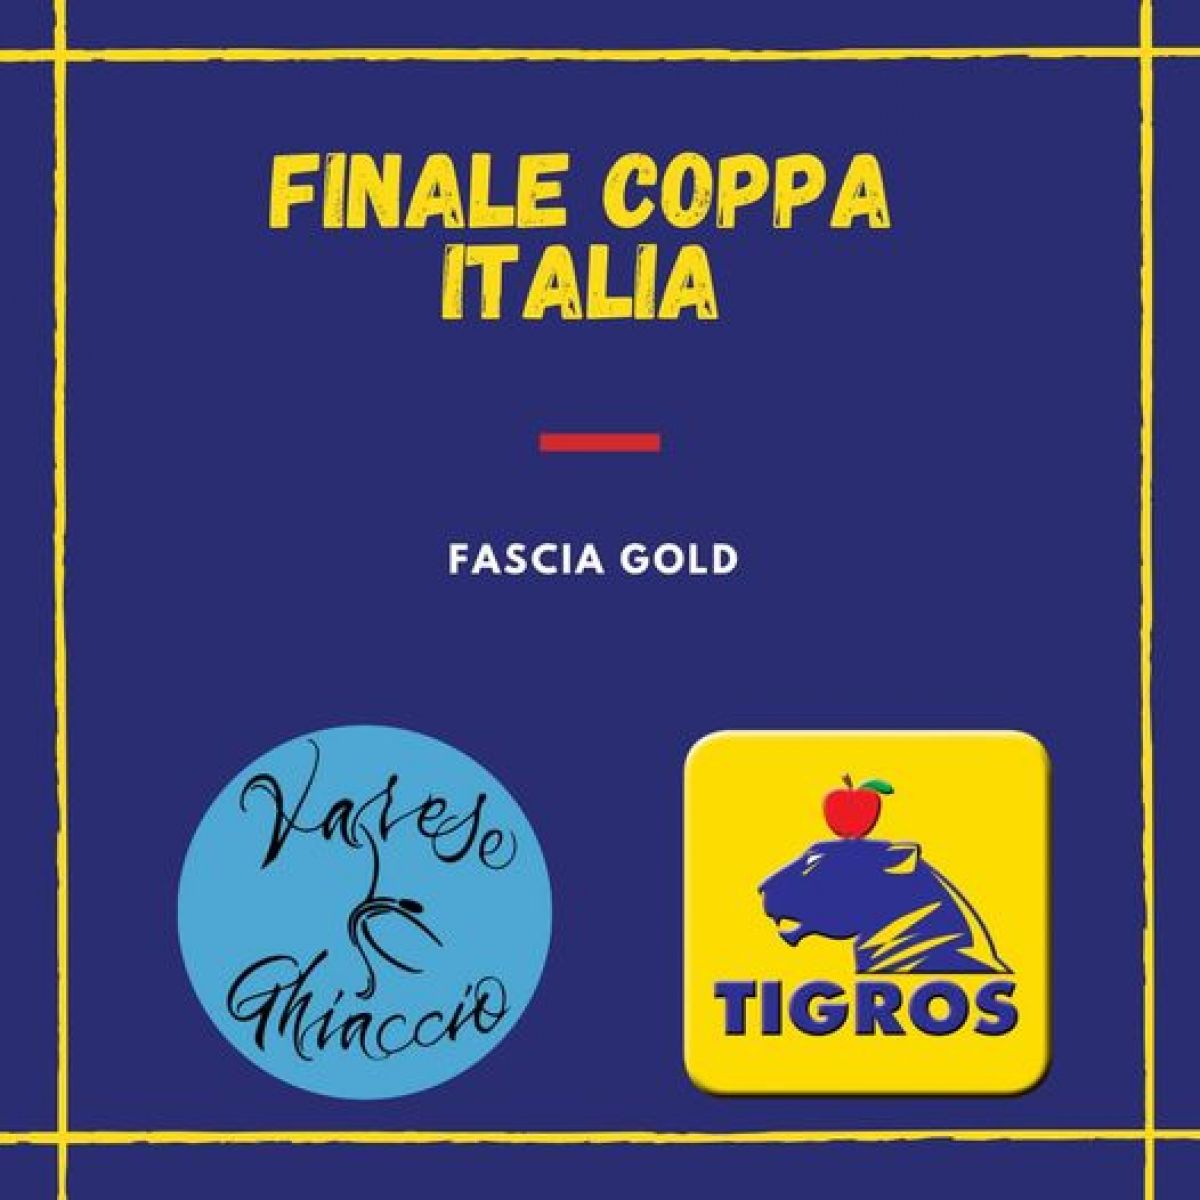 FINALE COPPA ITALIA (FASCIA GOLD)⛸❄️